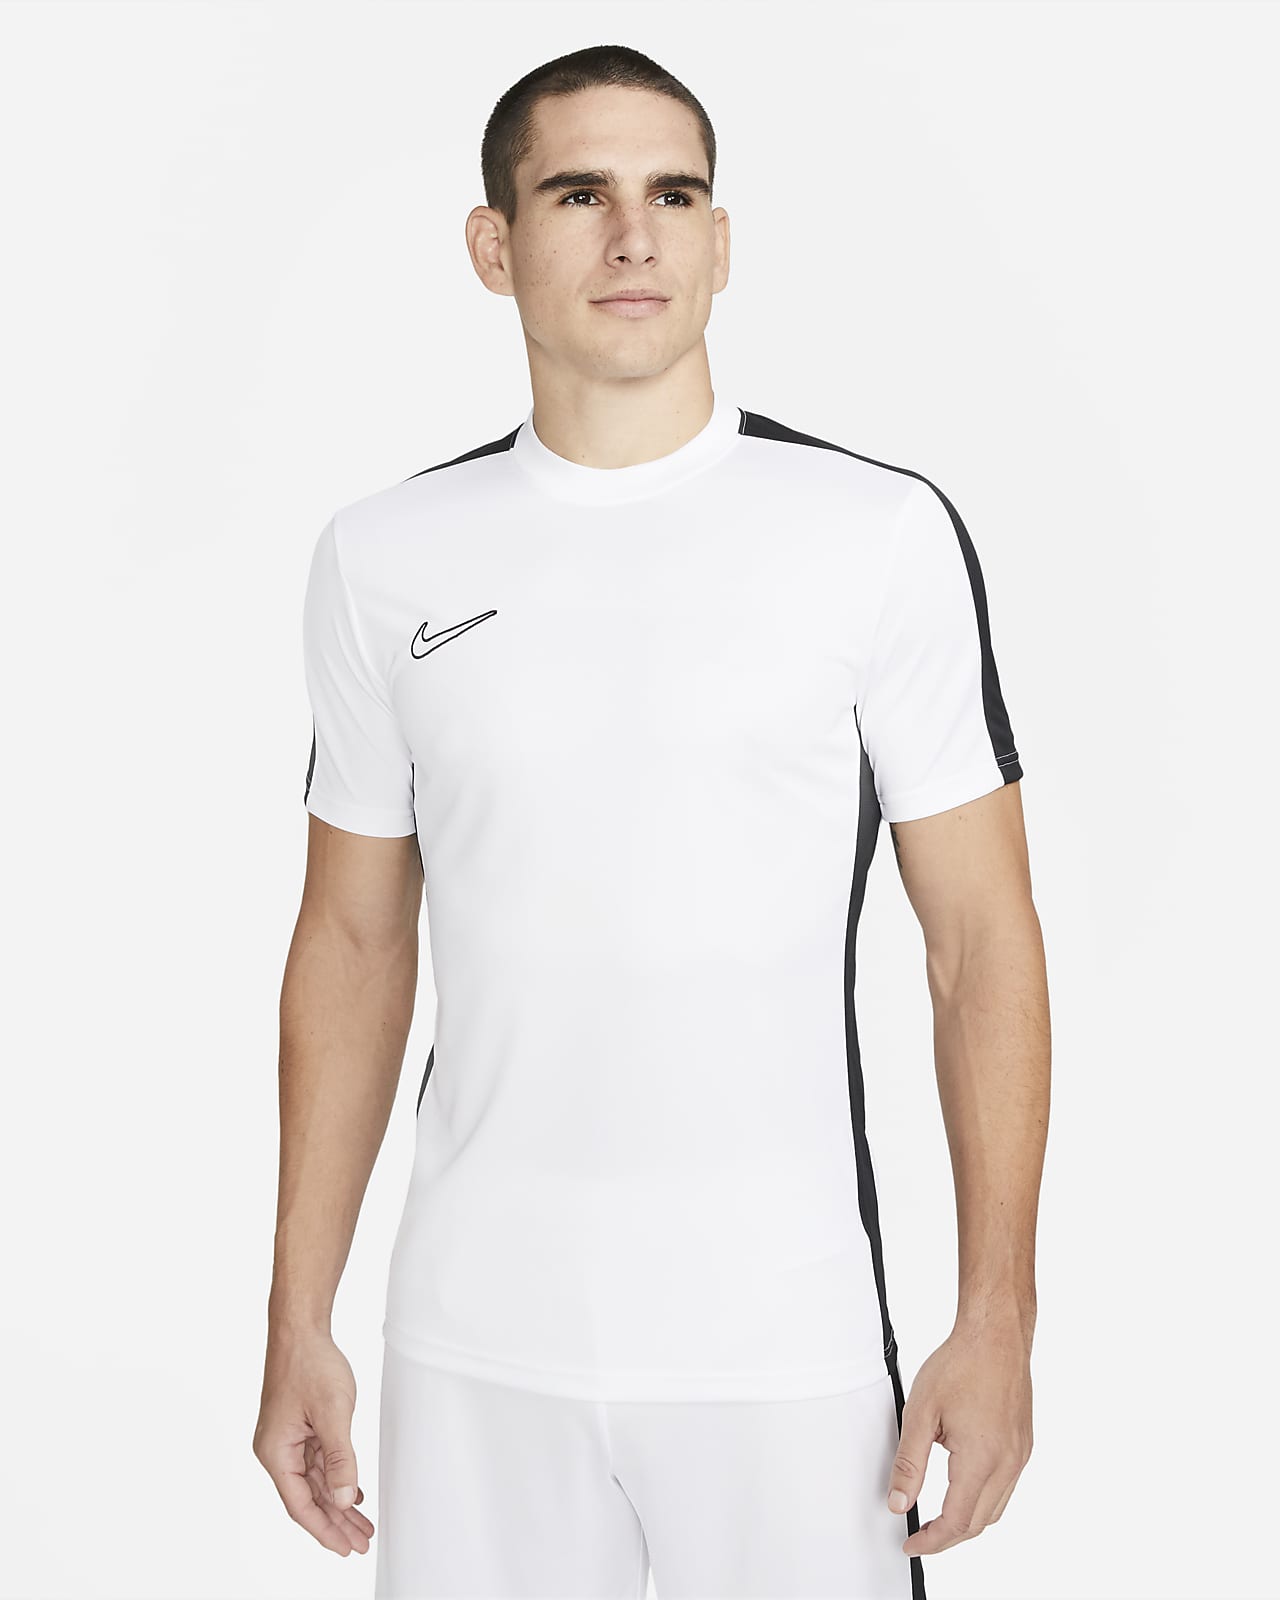 Pánské fotbalové tričko Nike Academy Dri-FIT s krátkým rukávem